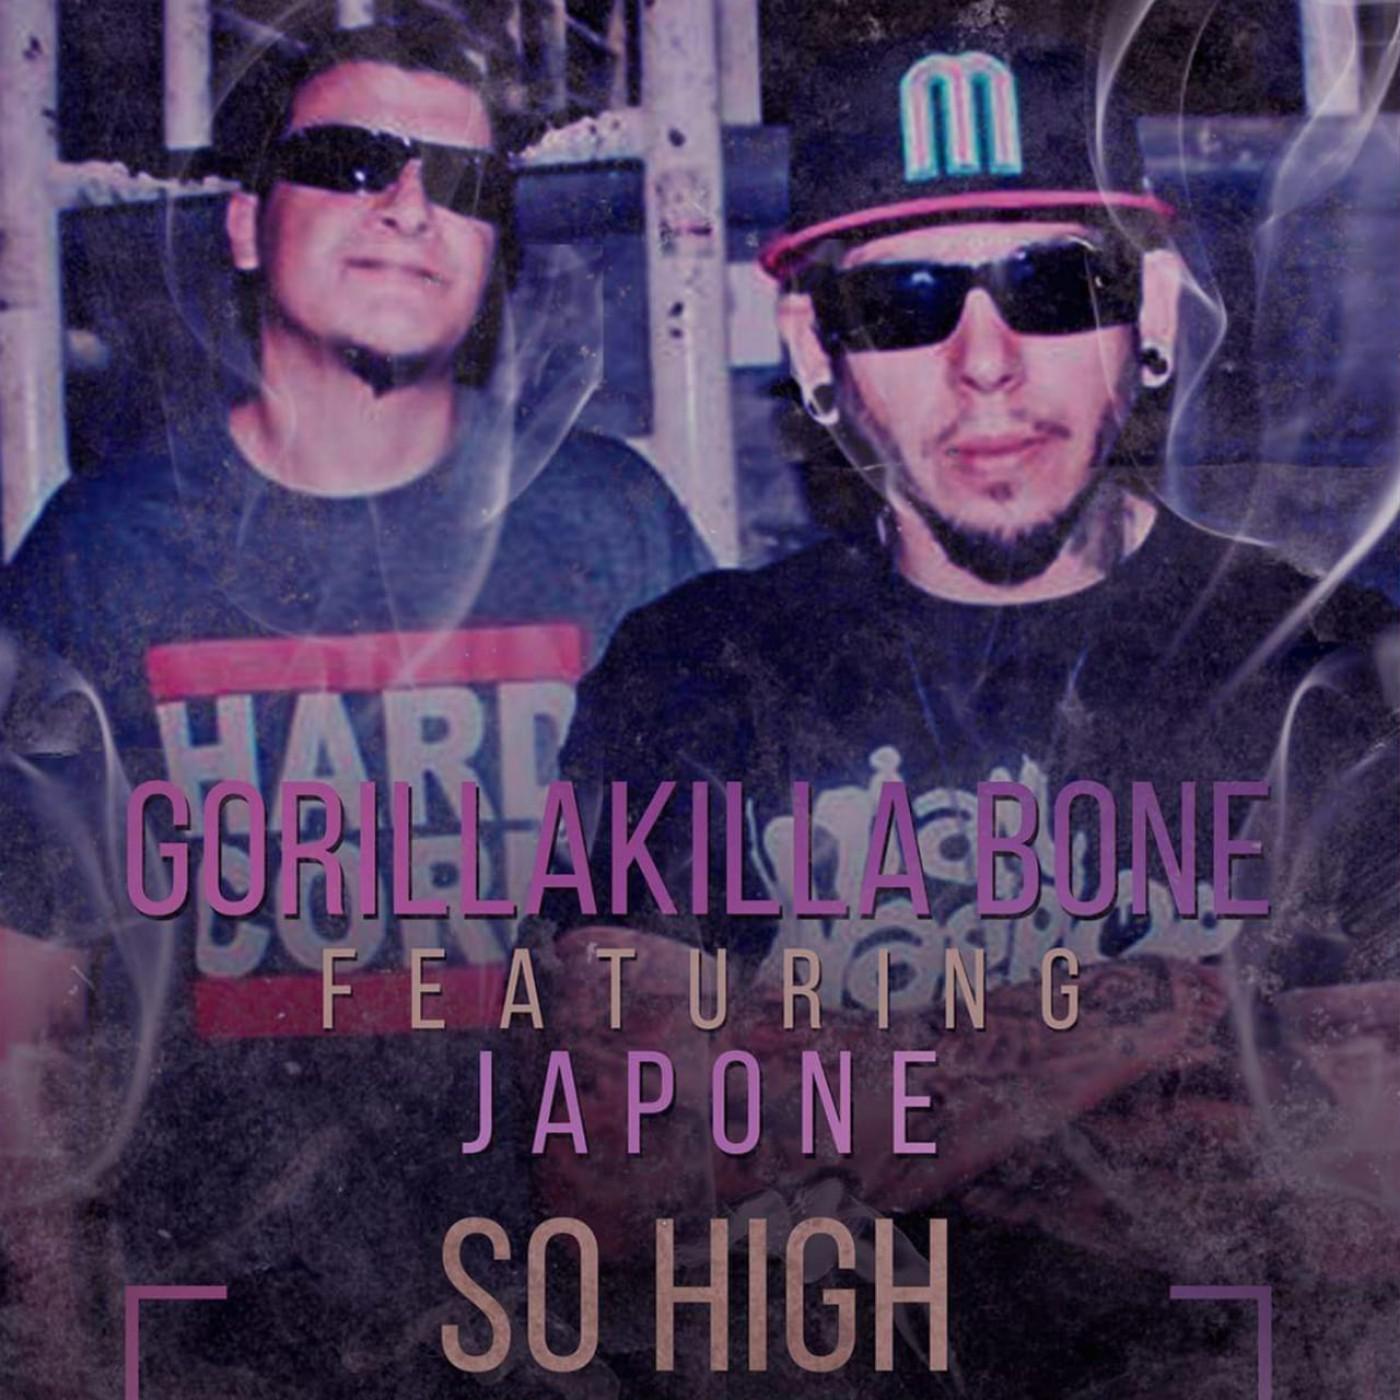 Gorillakilla Bone - So High